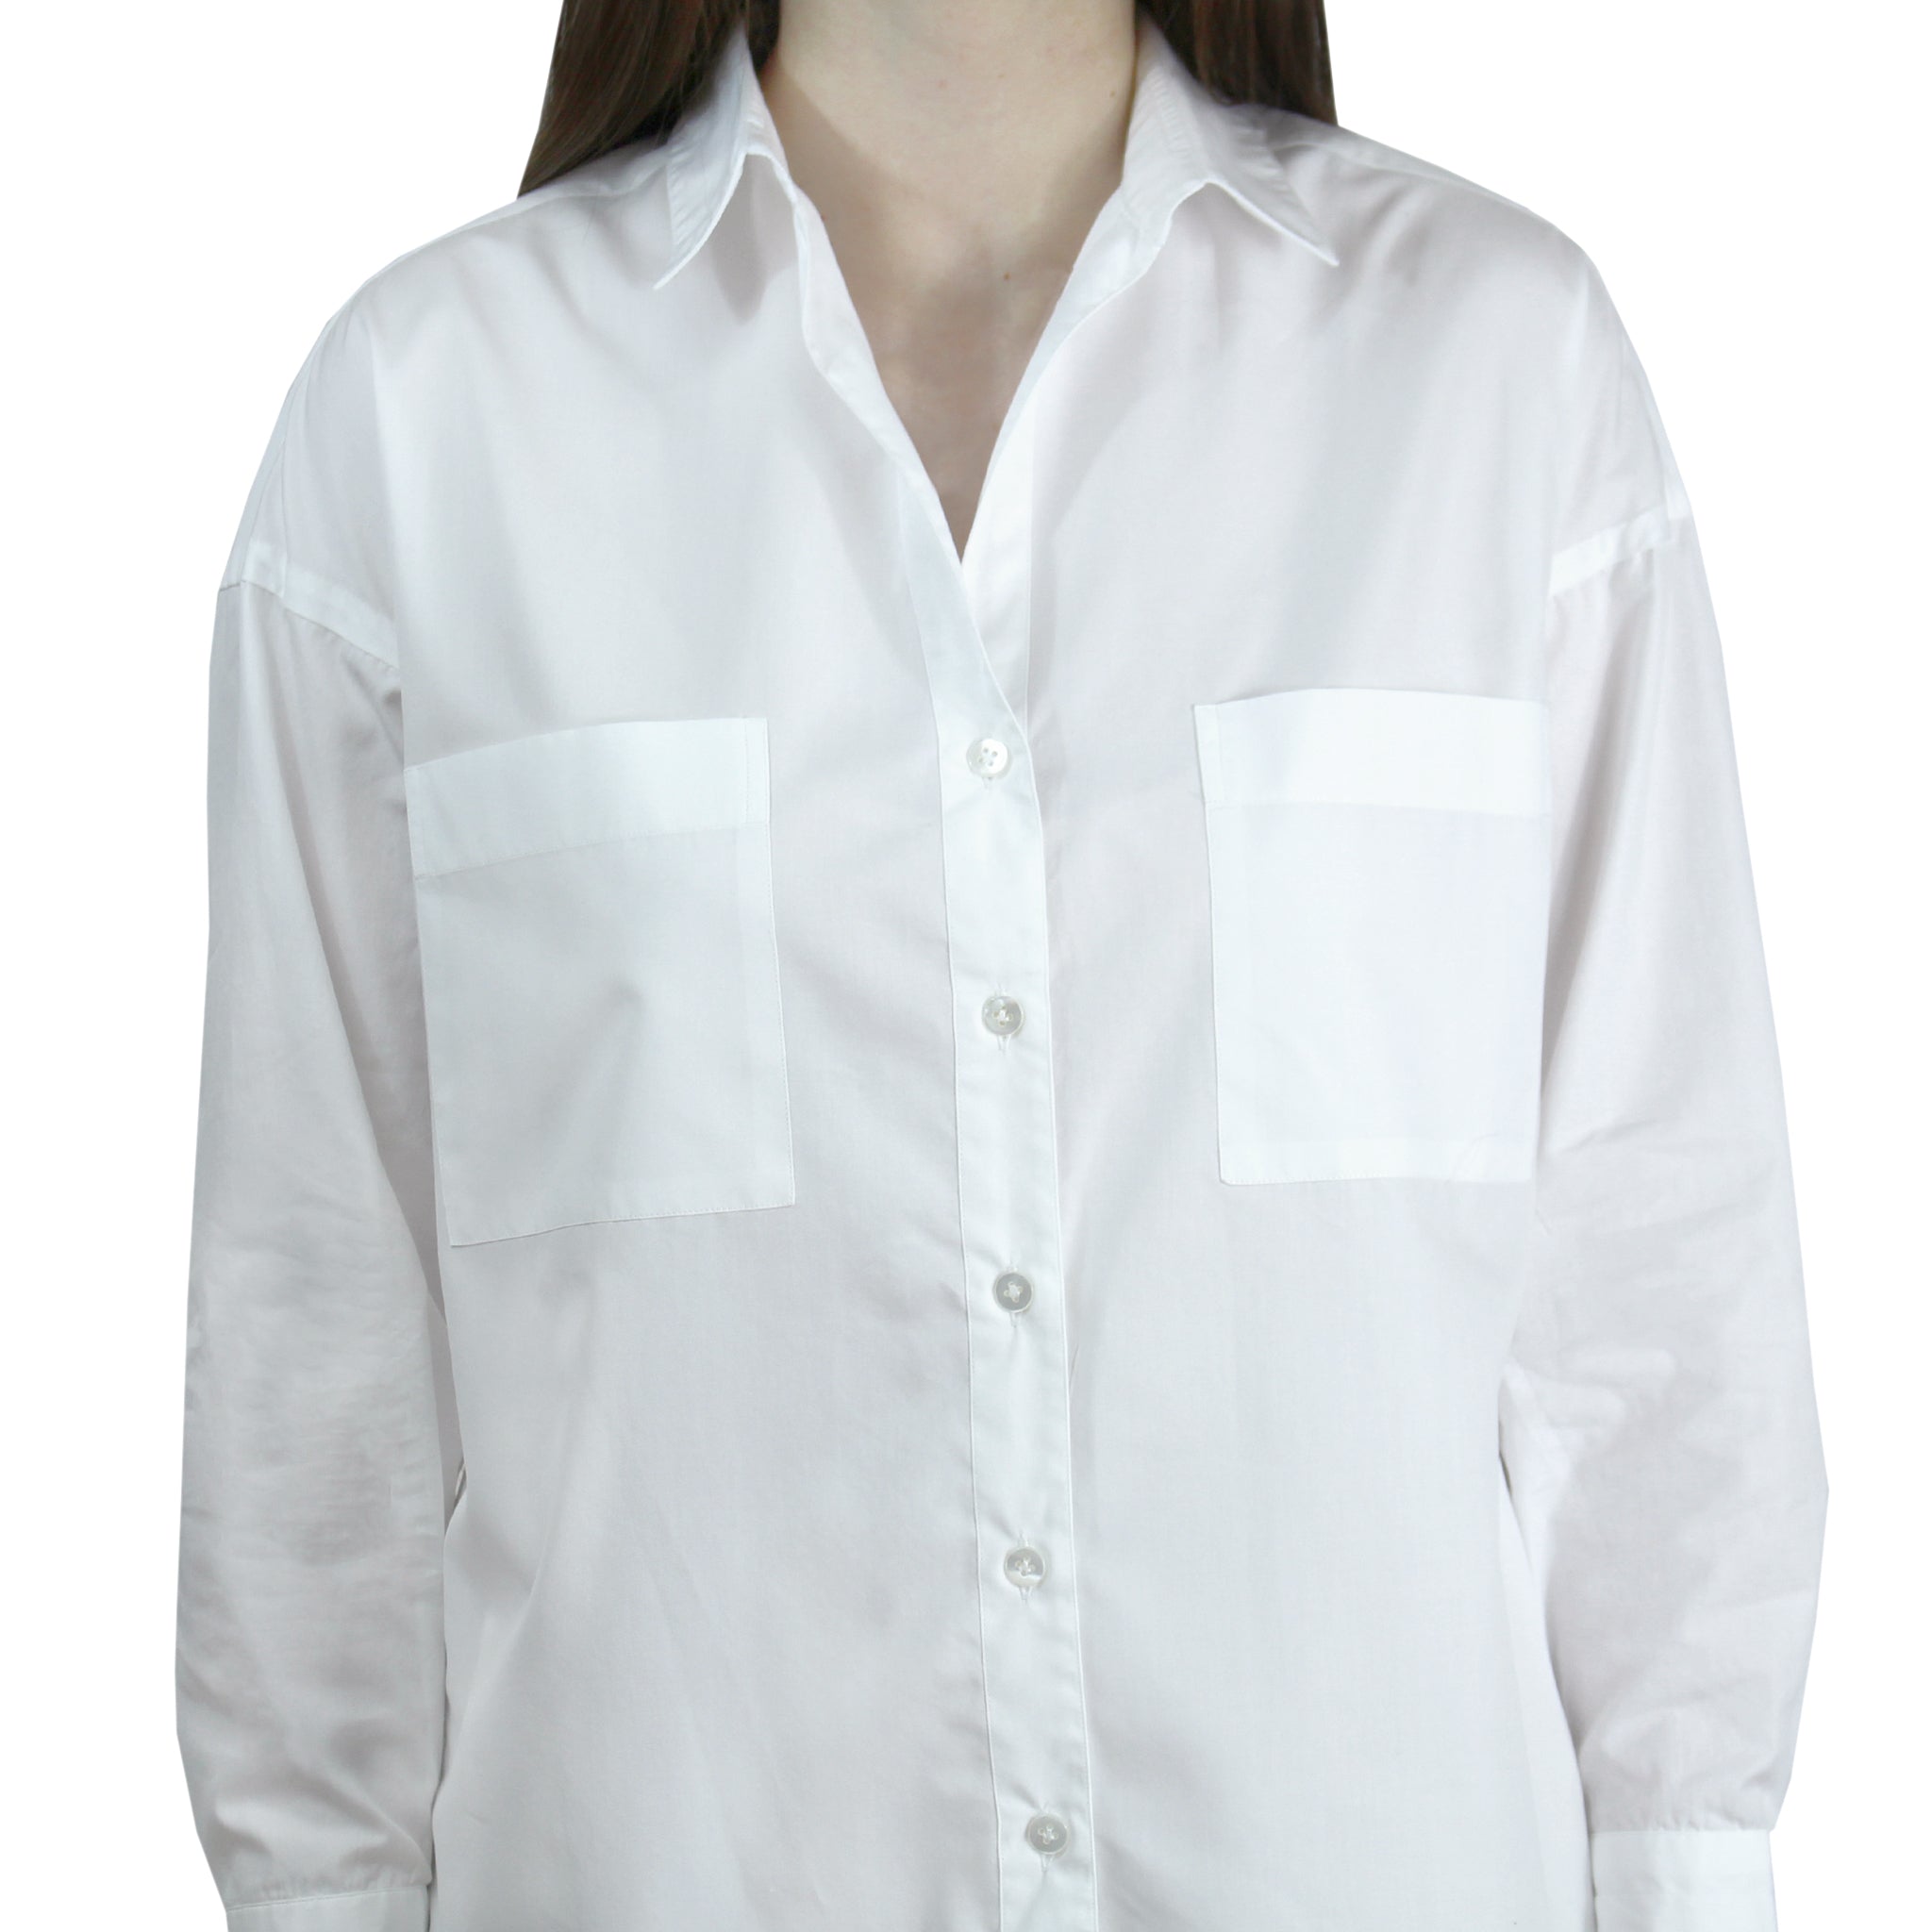 Camicia in popeline bianco con tasche e fettuccia per regolare la manica